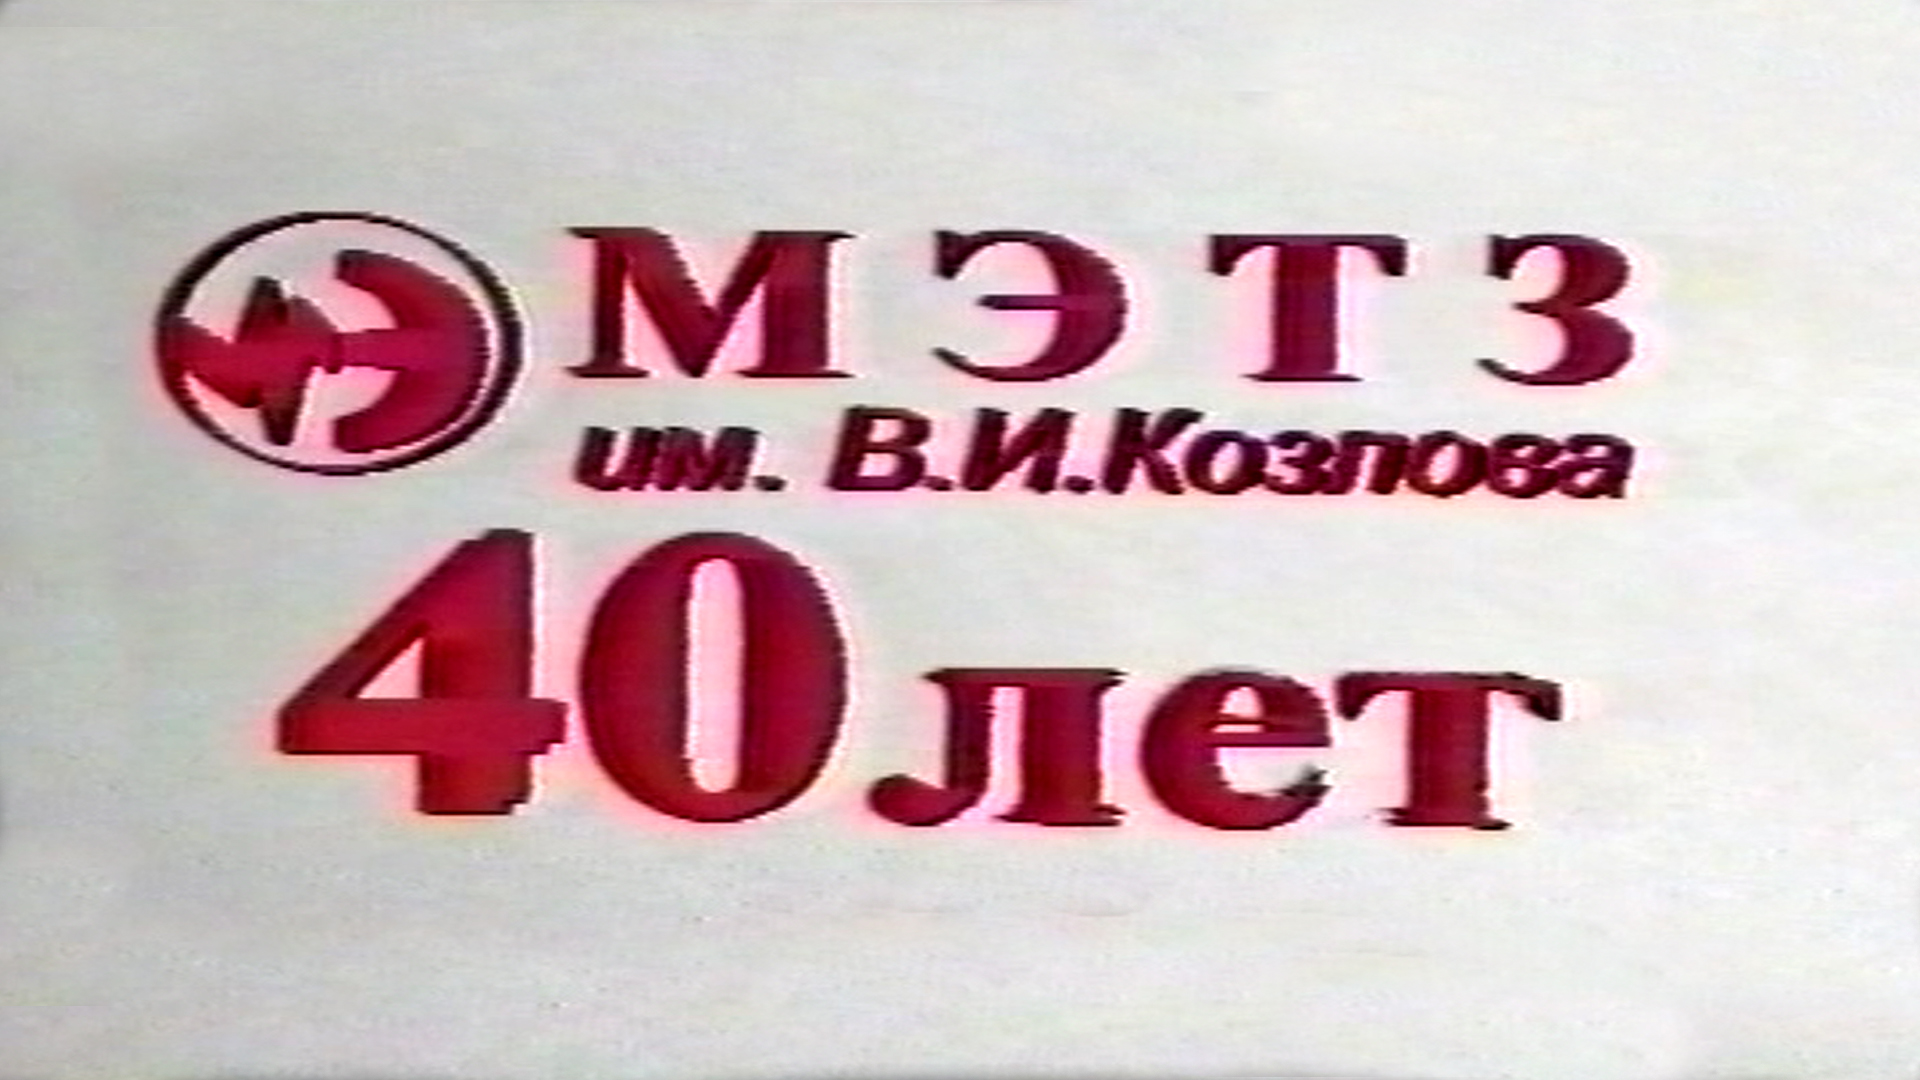 Минскому электротехническому заводу имени В.И. Козлова 40 лет. Фильм 1996 года